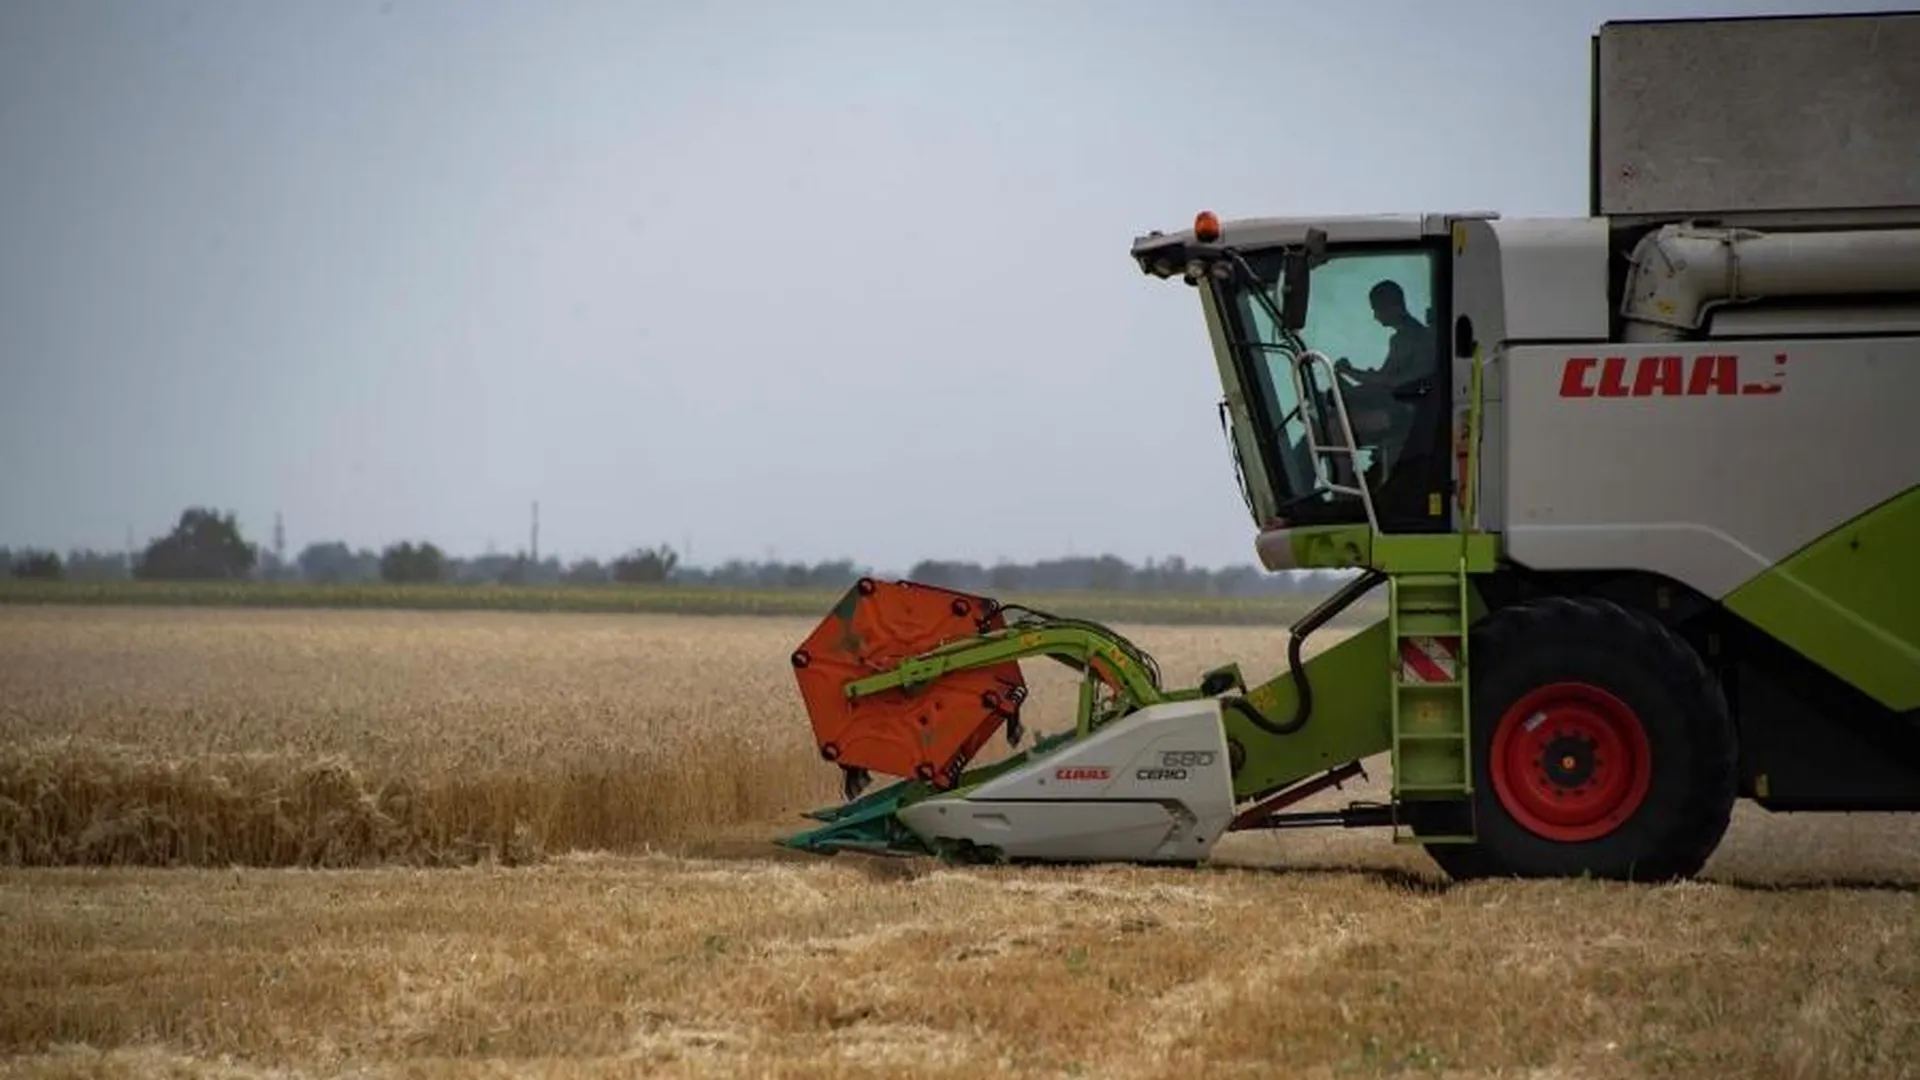 Чижов: Европа продлевает еще на год беспошлинный импорт продовольствия из Украины